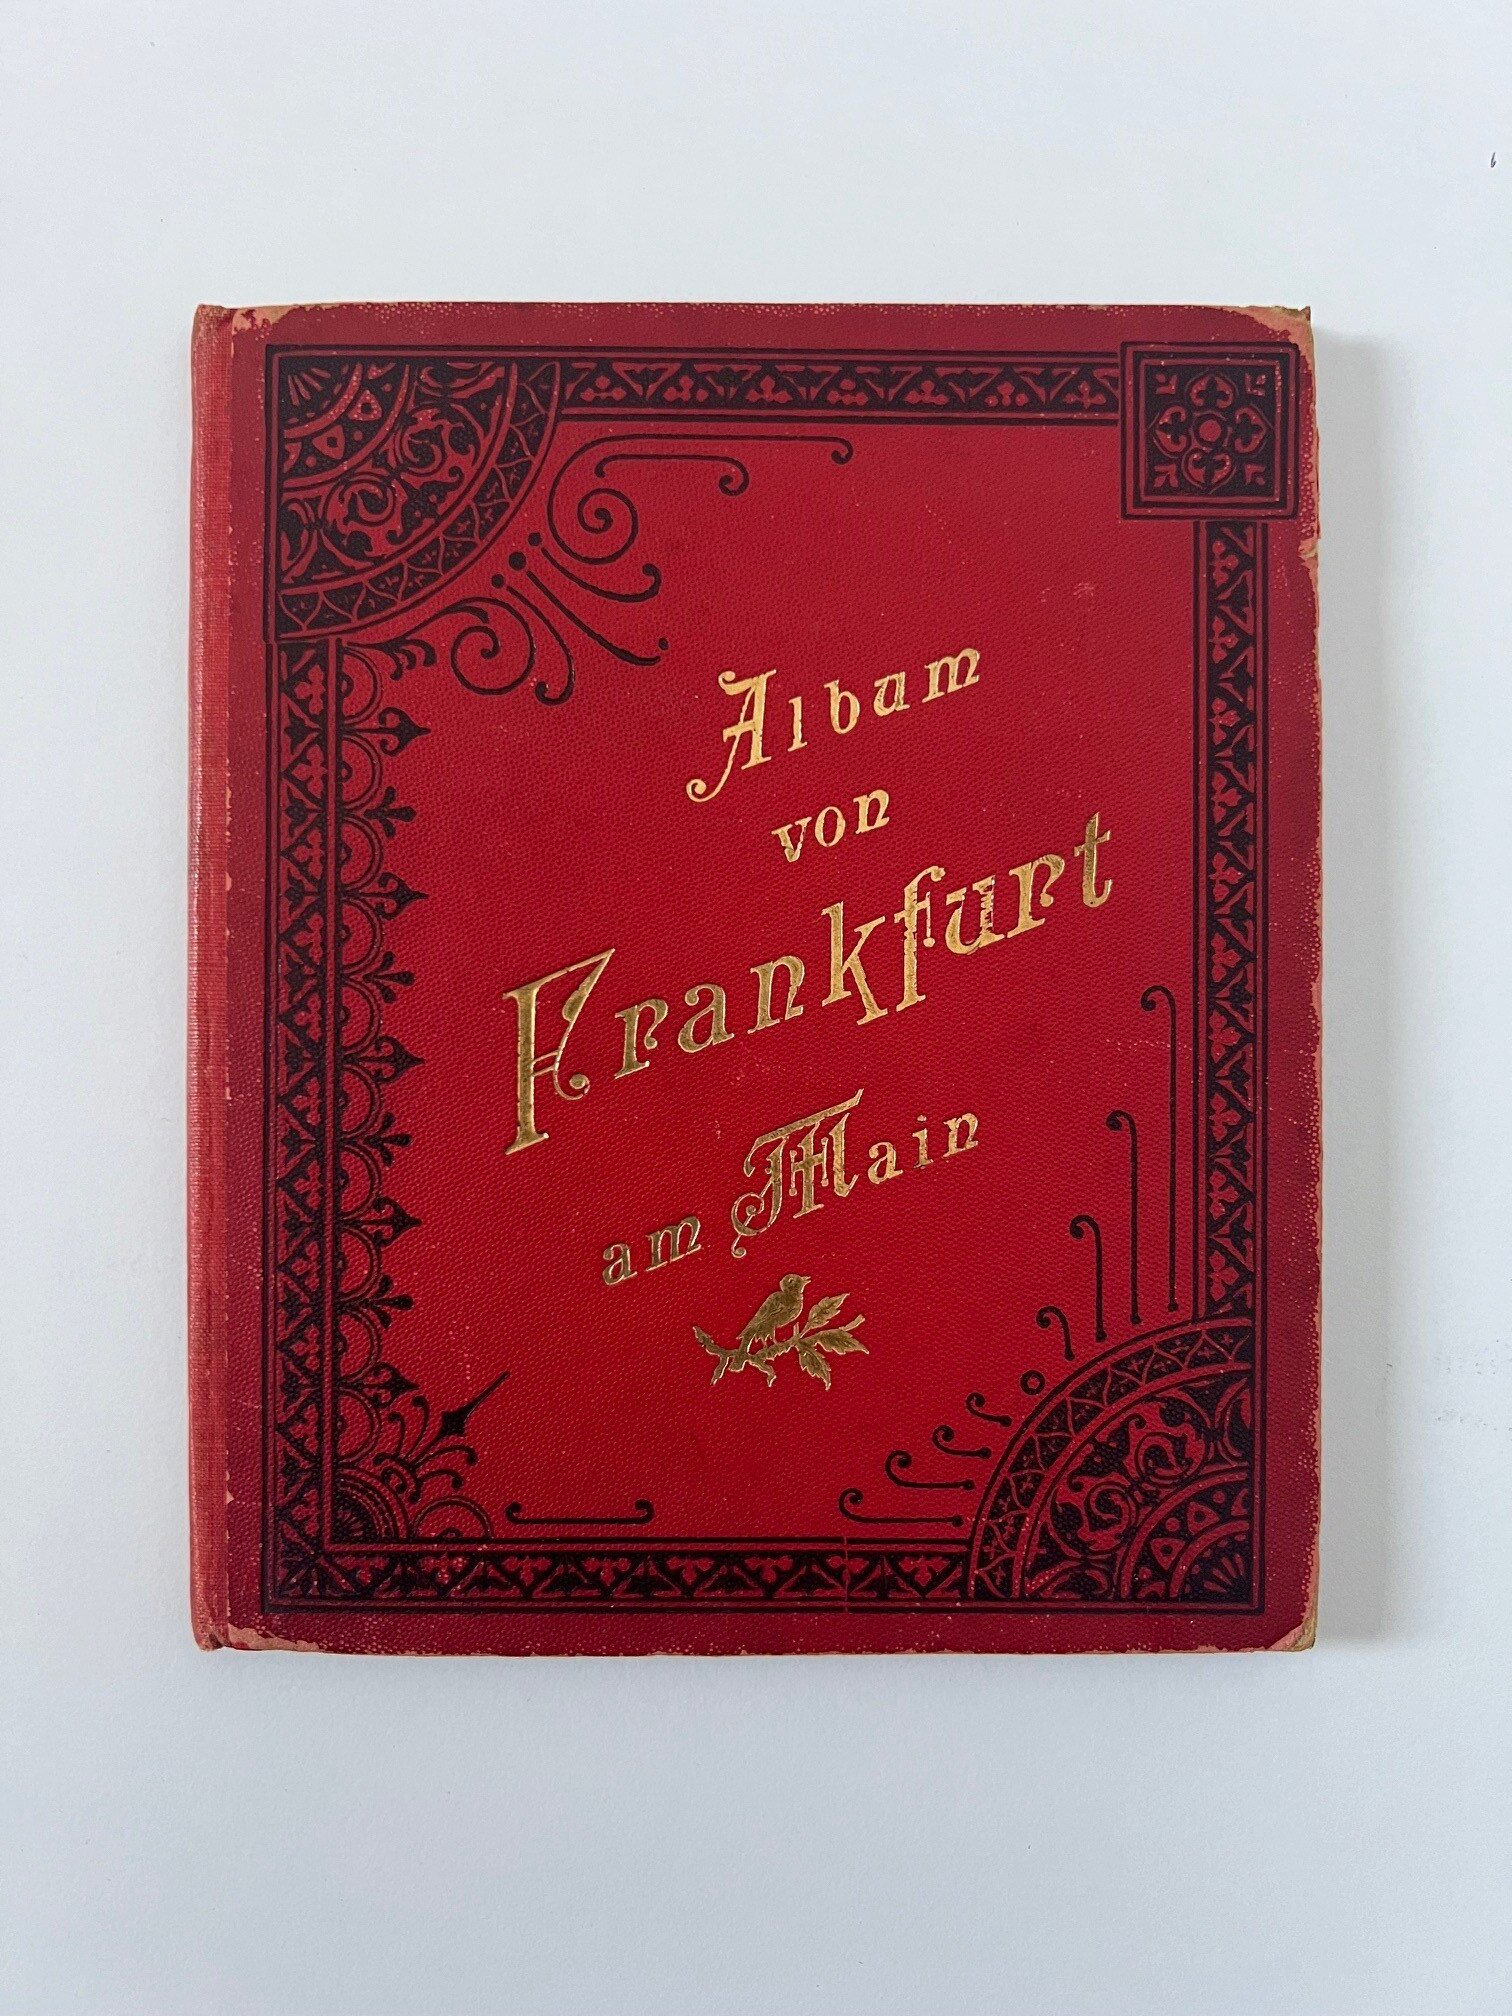 Verlag Gerhard Blümlein & Co, Album von Frankfurt am Main, 33 Lithographien als Leporello, ca. 1903. (Taunus-Rhein-Main - Regionalgeschichtliche Sammlung Dr. Stefan Naas CC BY-NC-SA)